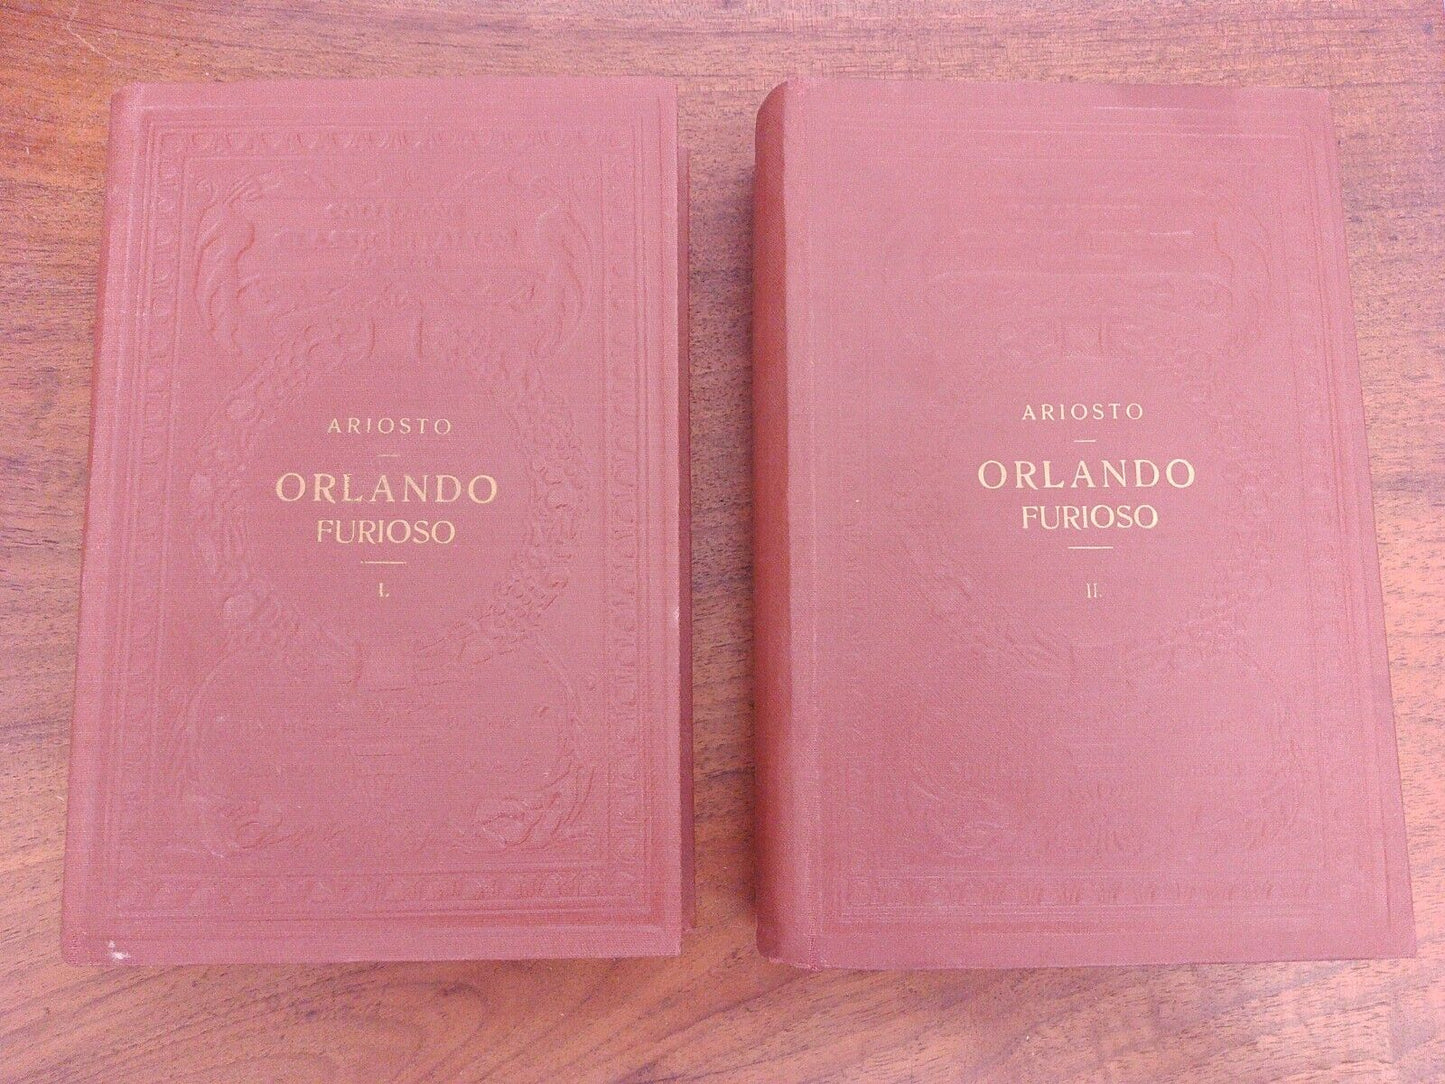 Orlando furioso, L. Ariosto, Vol. I-II, UTET, 1923